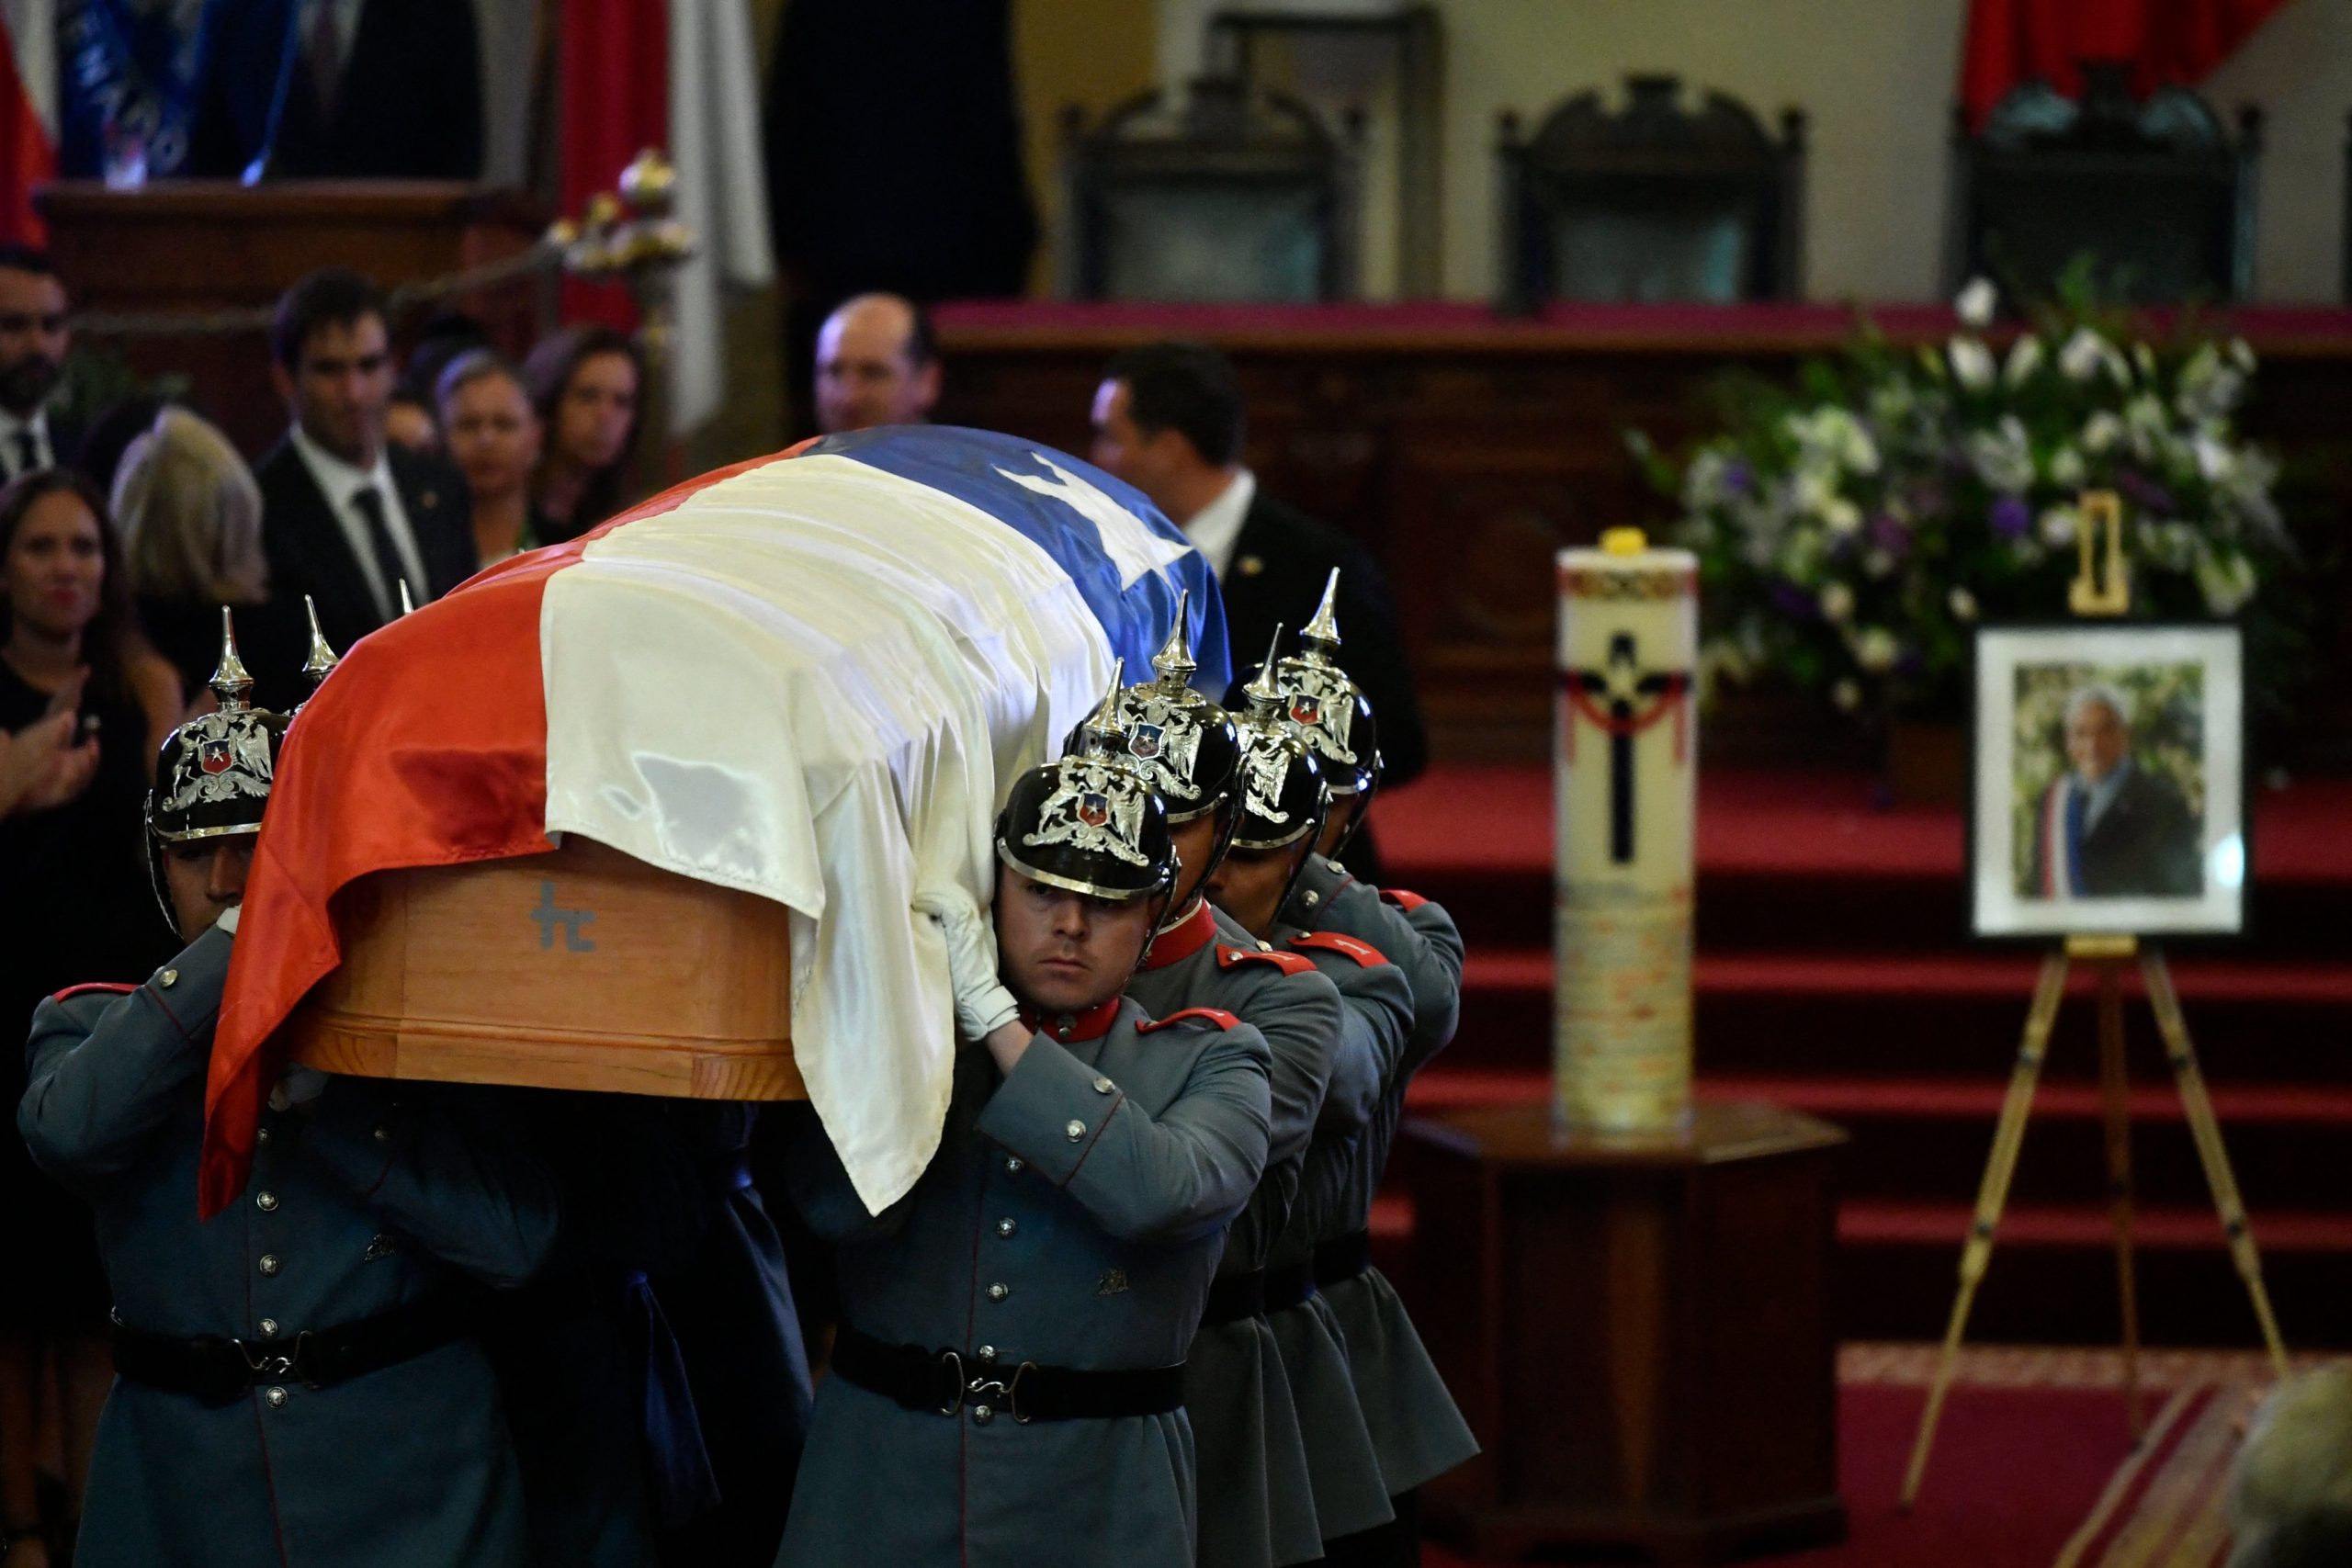 “Piñera abrió camino a una derecha moderna y democrática”, dice Boric en su funeral